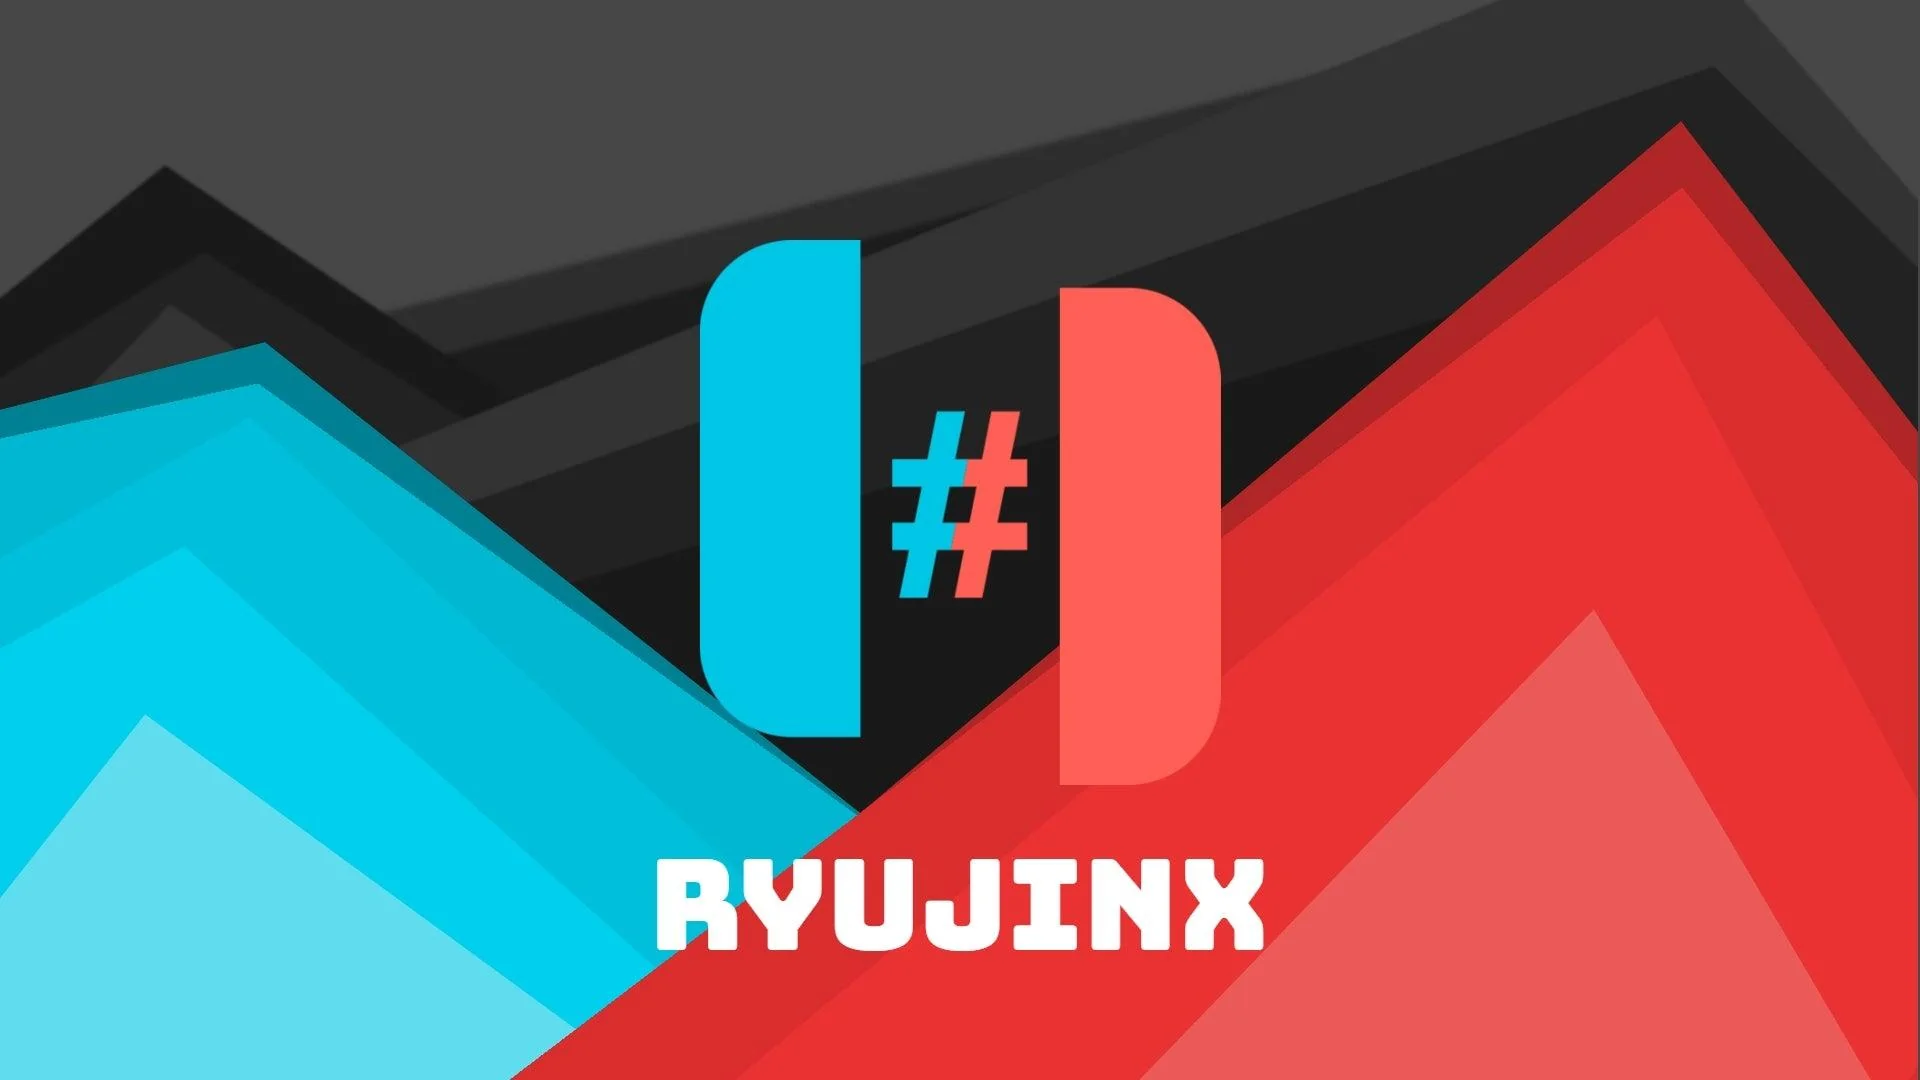 Ryujinx Emulator